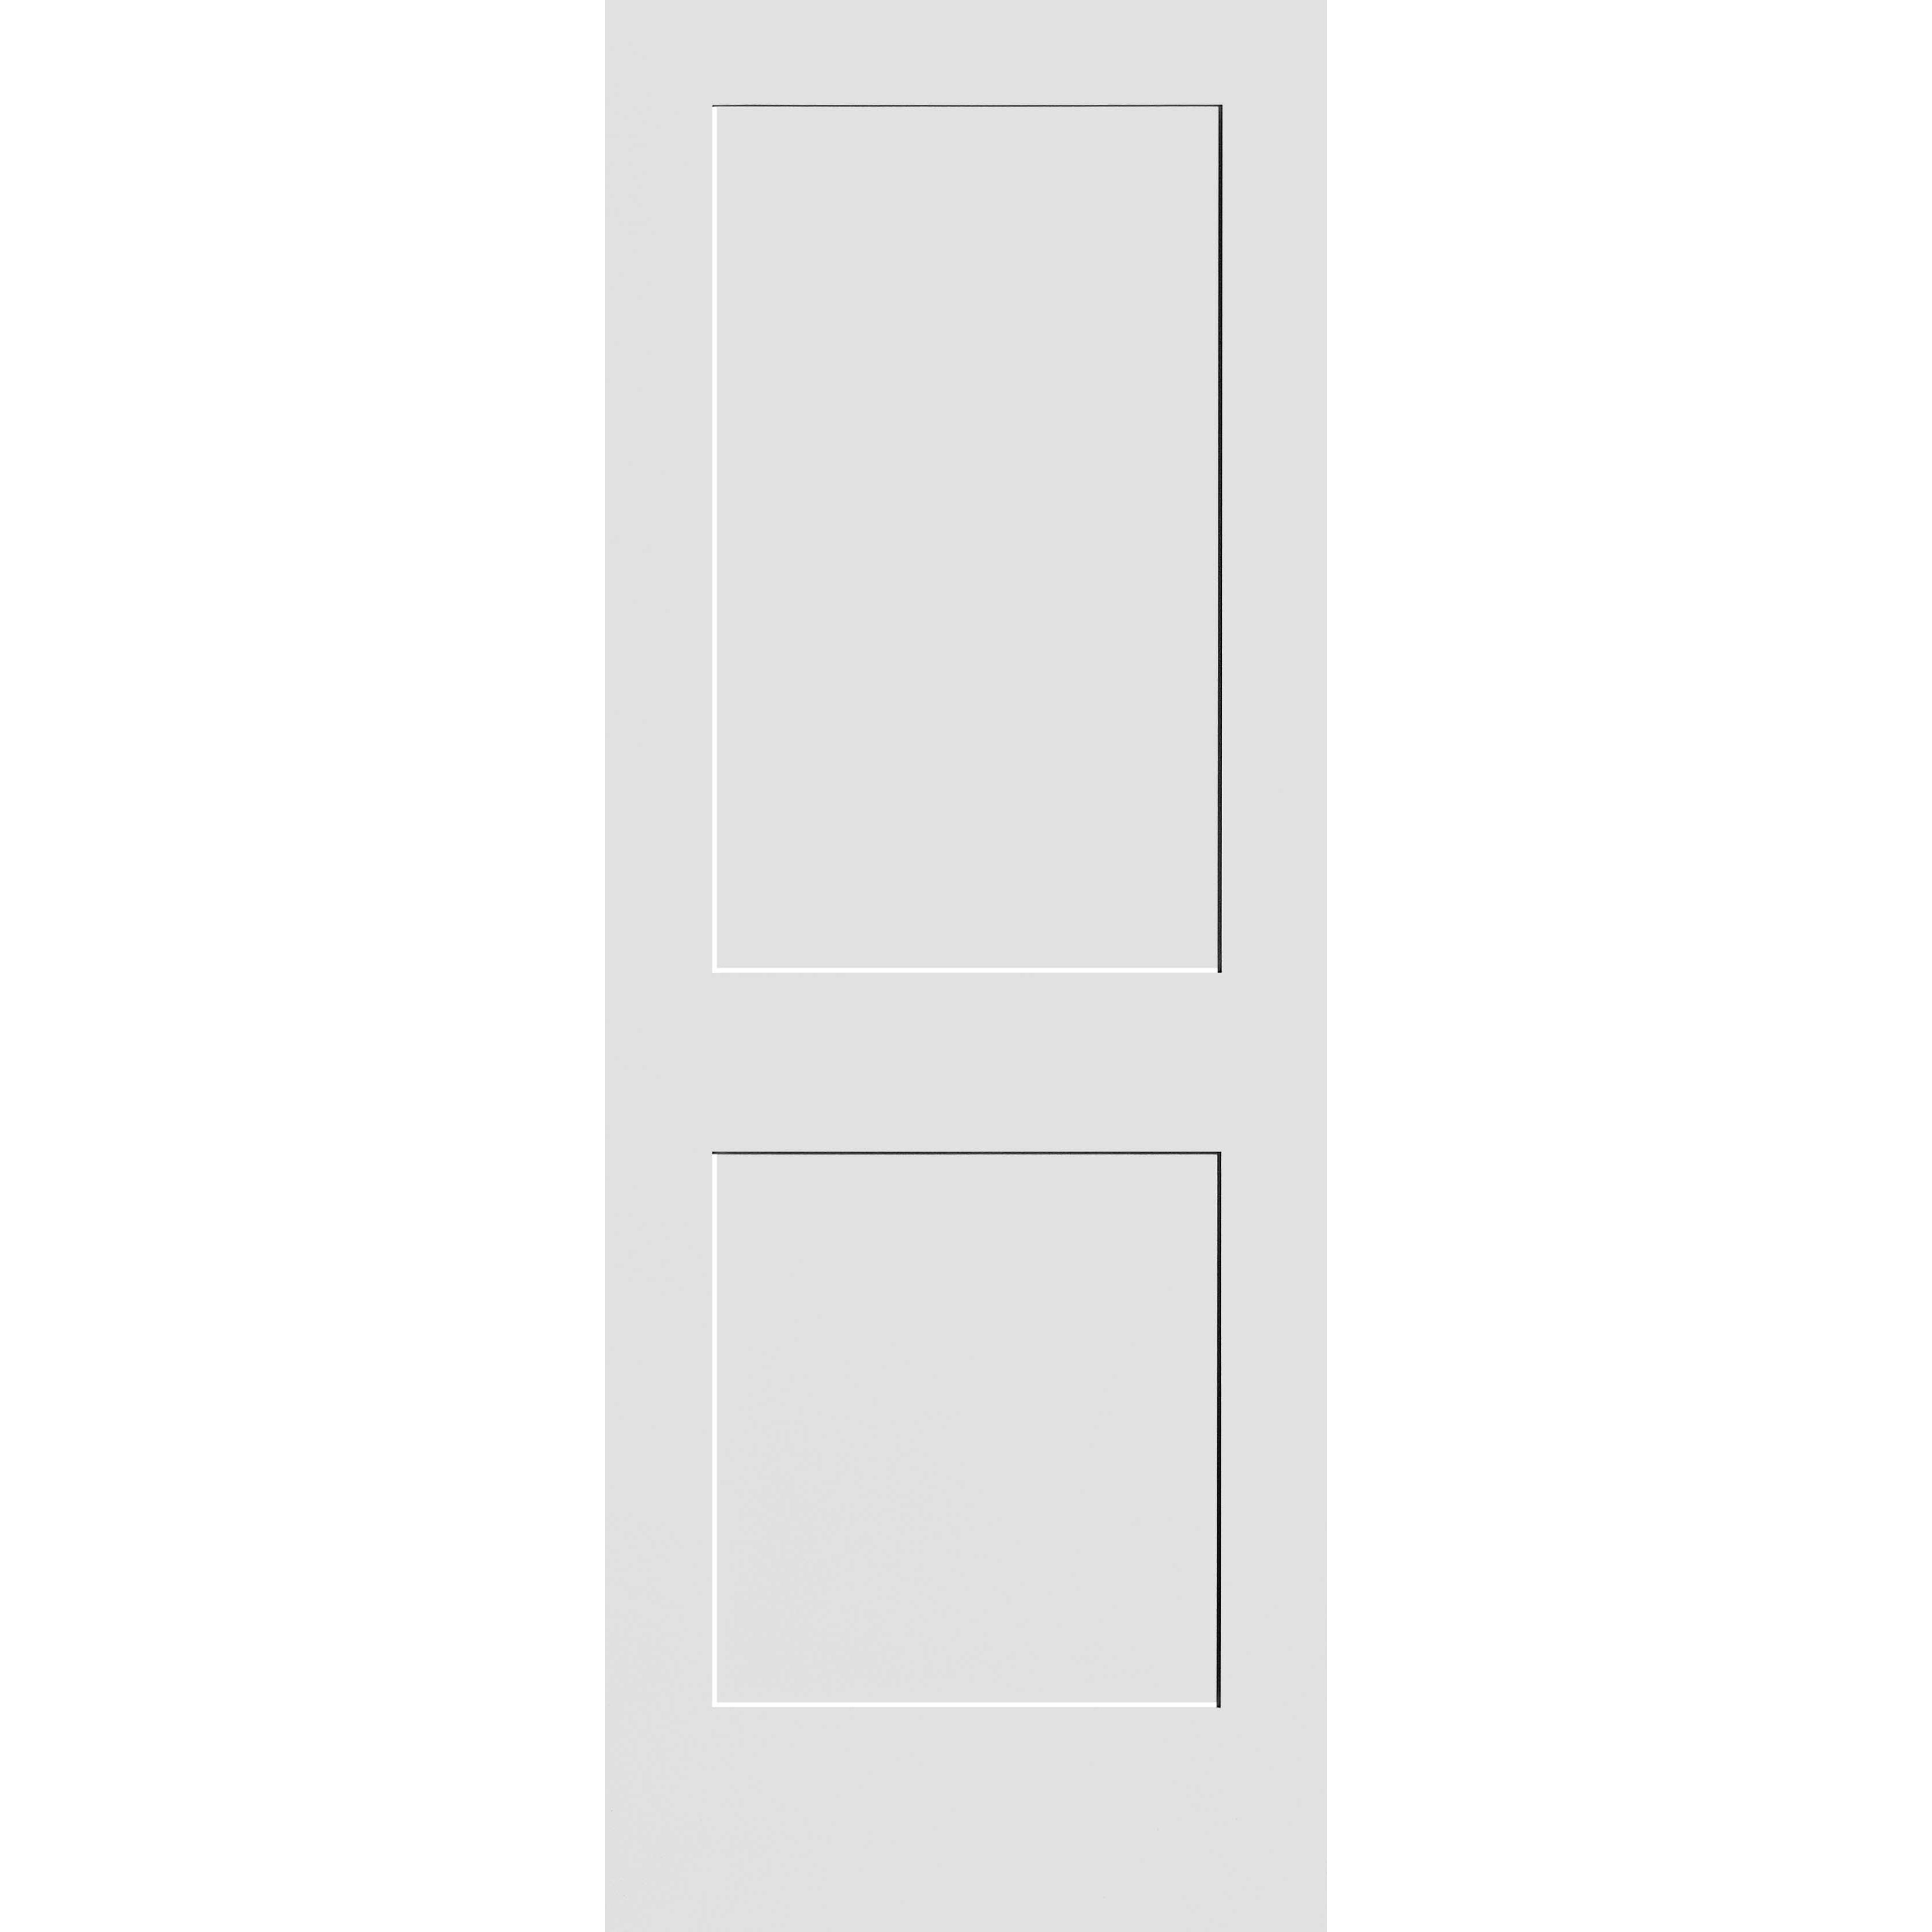 28X96 #8402 MDF PRIMED SHAKER PANEL INTERIOR DOOR